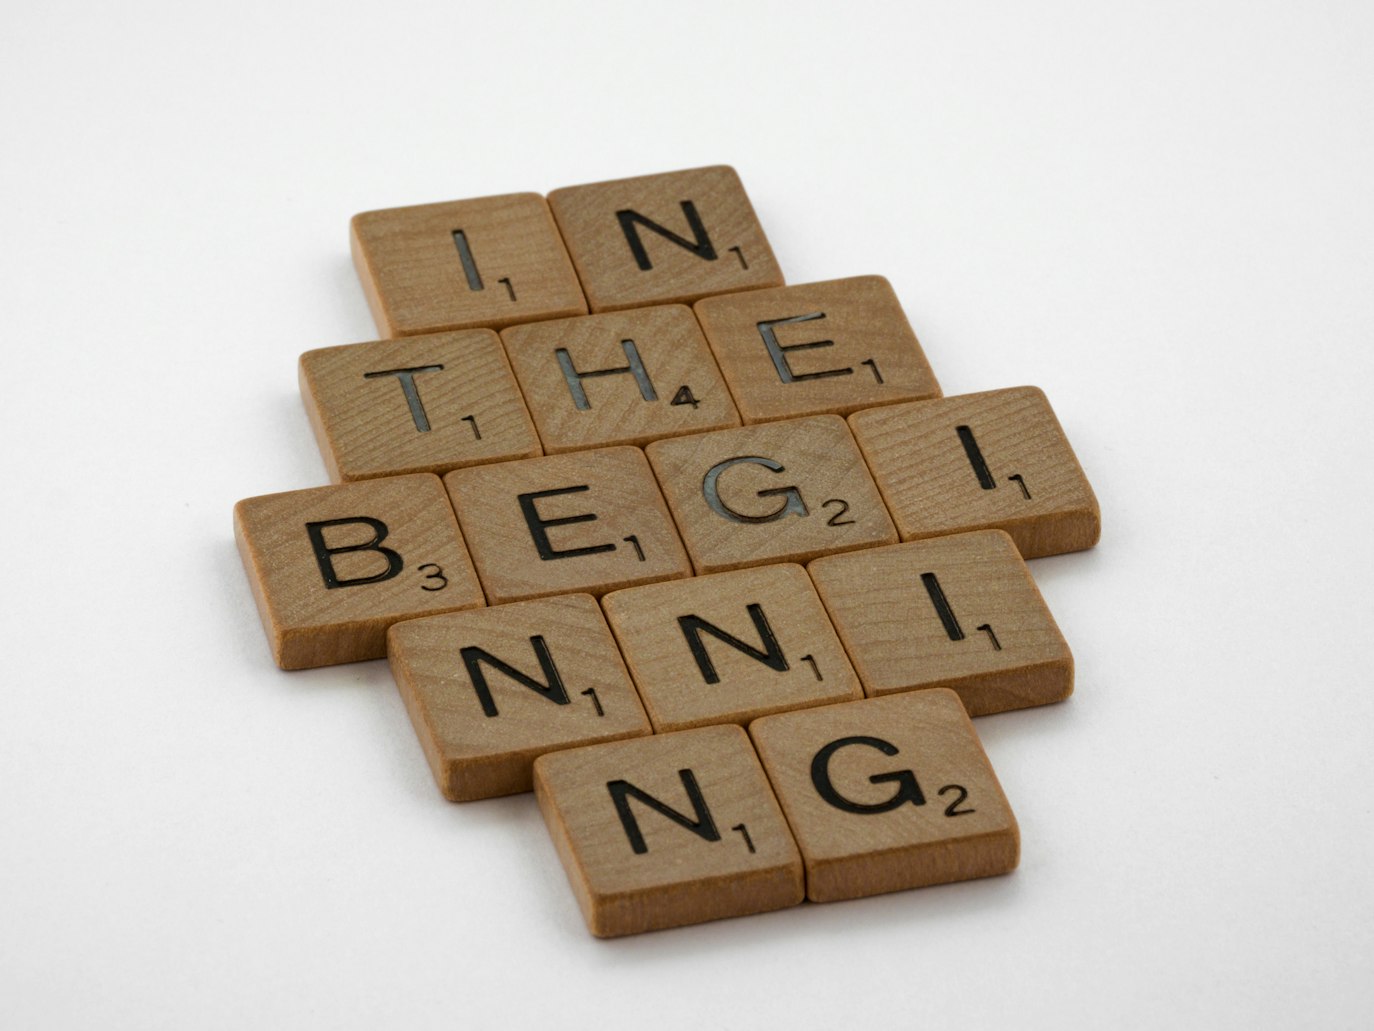 Brown blocks spelling: In the beginning